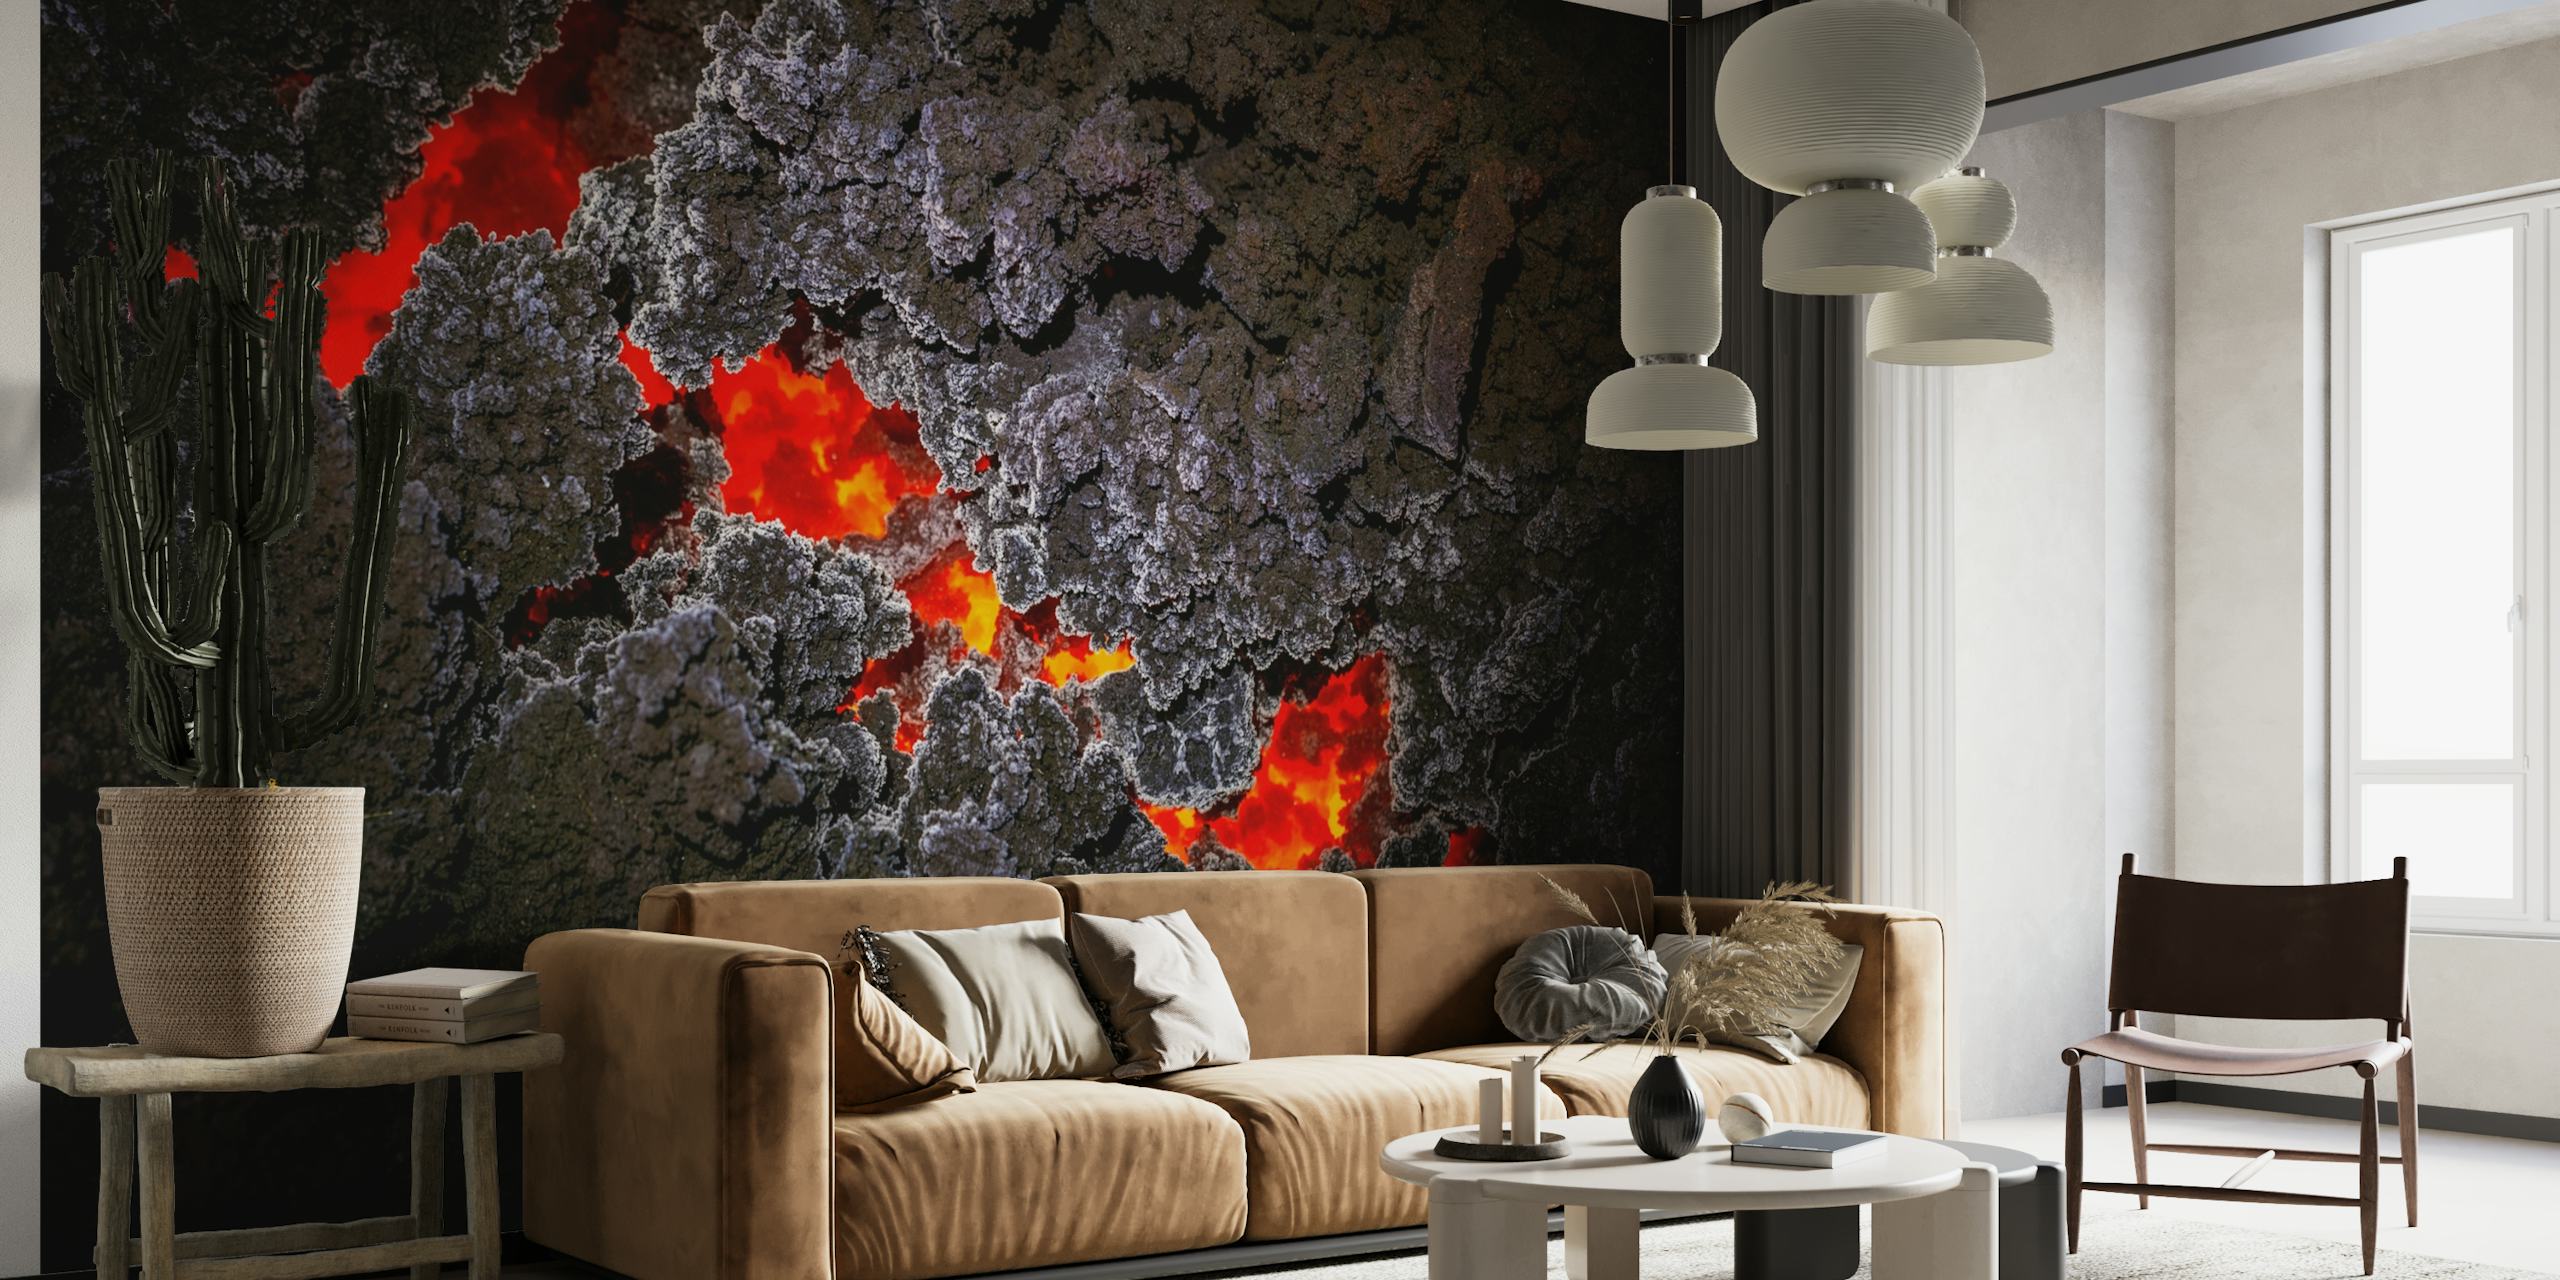 Apstraktna zidna slika s crvenim kristalnim uzorcima na tamnoj pozadini koja simulira geodu